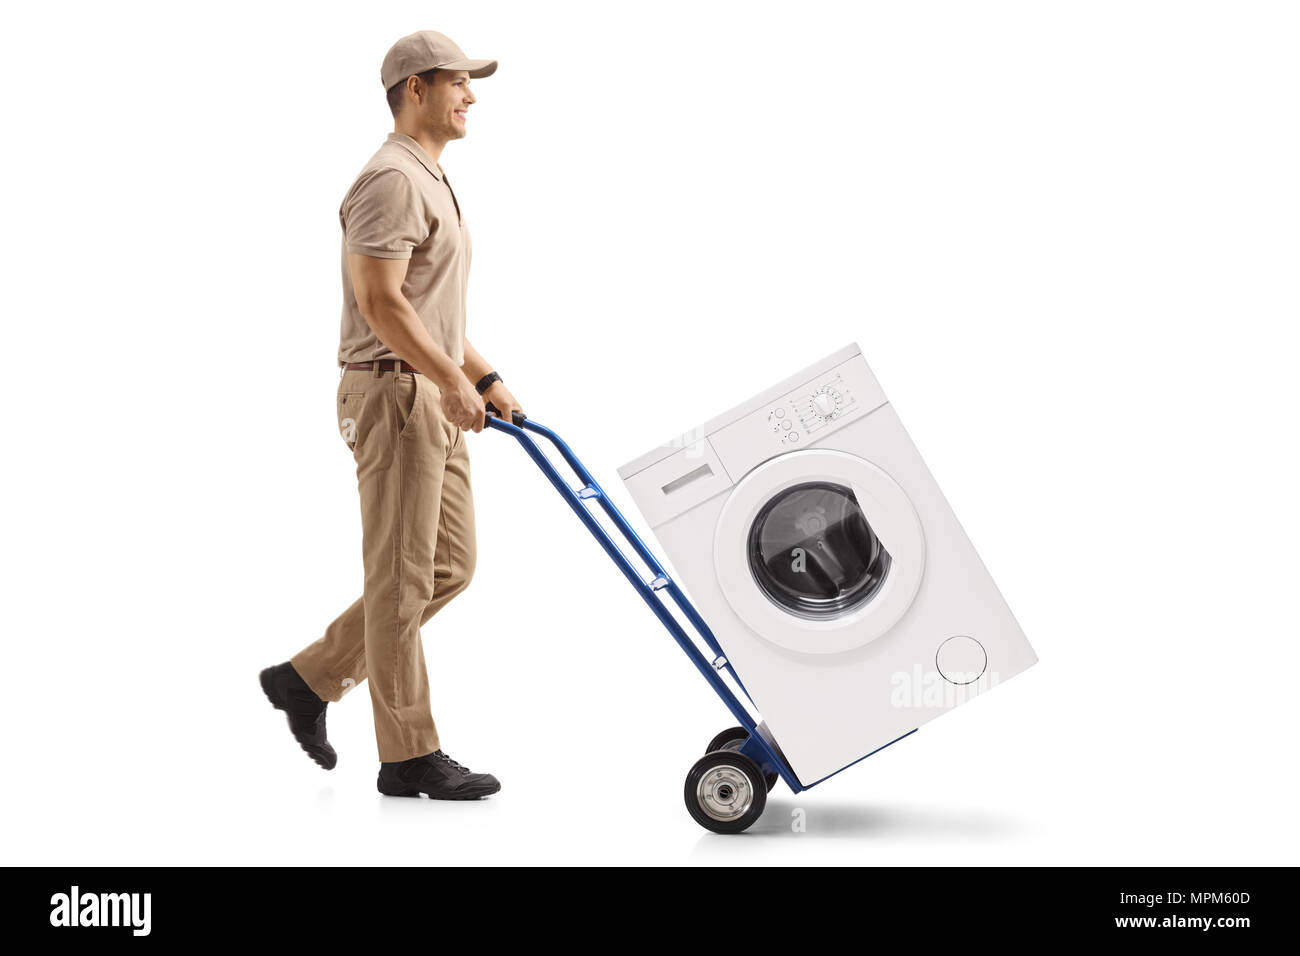 Lunghezza piena ripresa di profilo di un uomo di consegna spingendo un carrello caricato con una macchina di lavaggio isolata su sfondo bianco Foto Stock